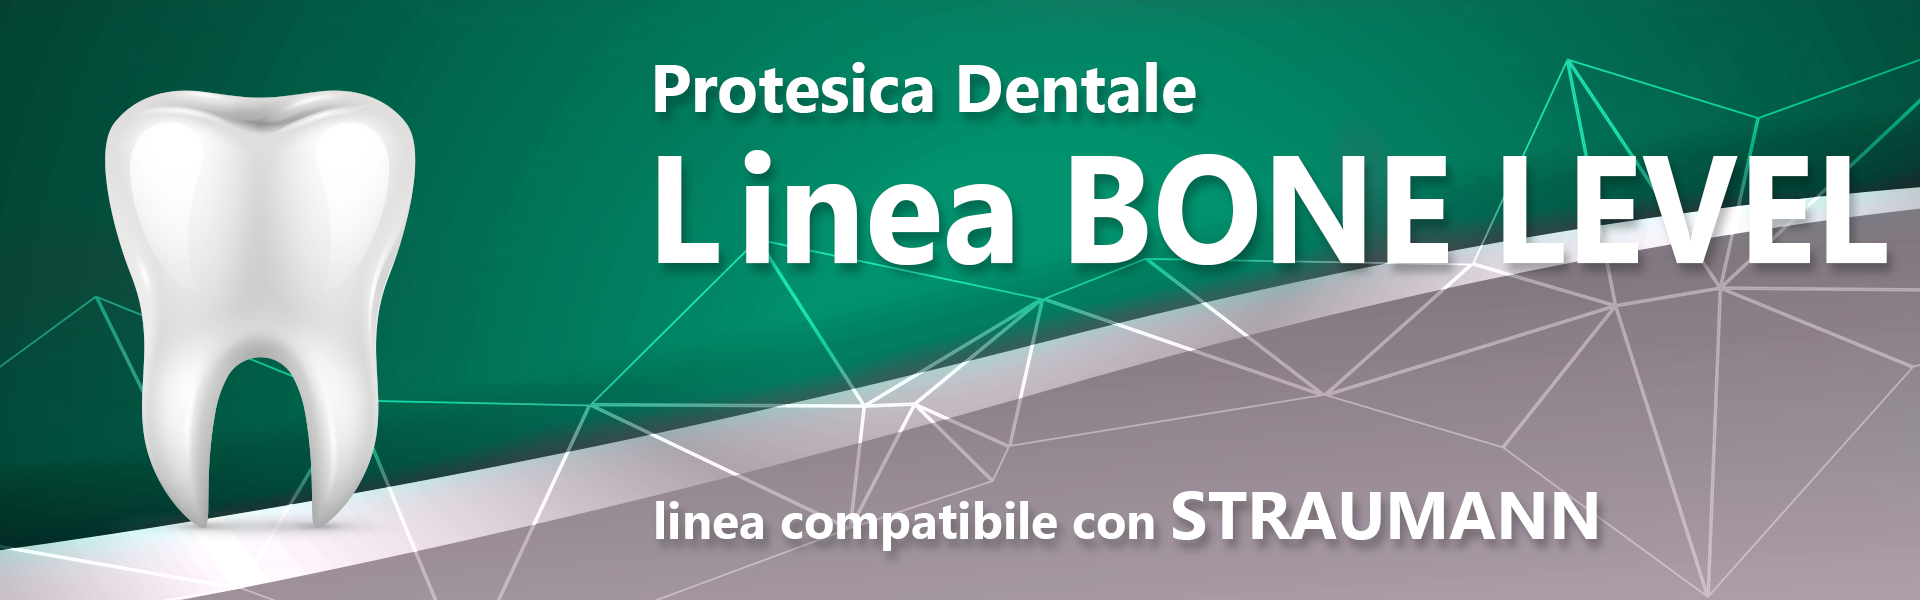  Linea BONE LEVEL (compatibile con STRAUMANN)